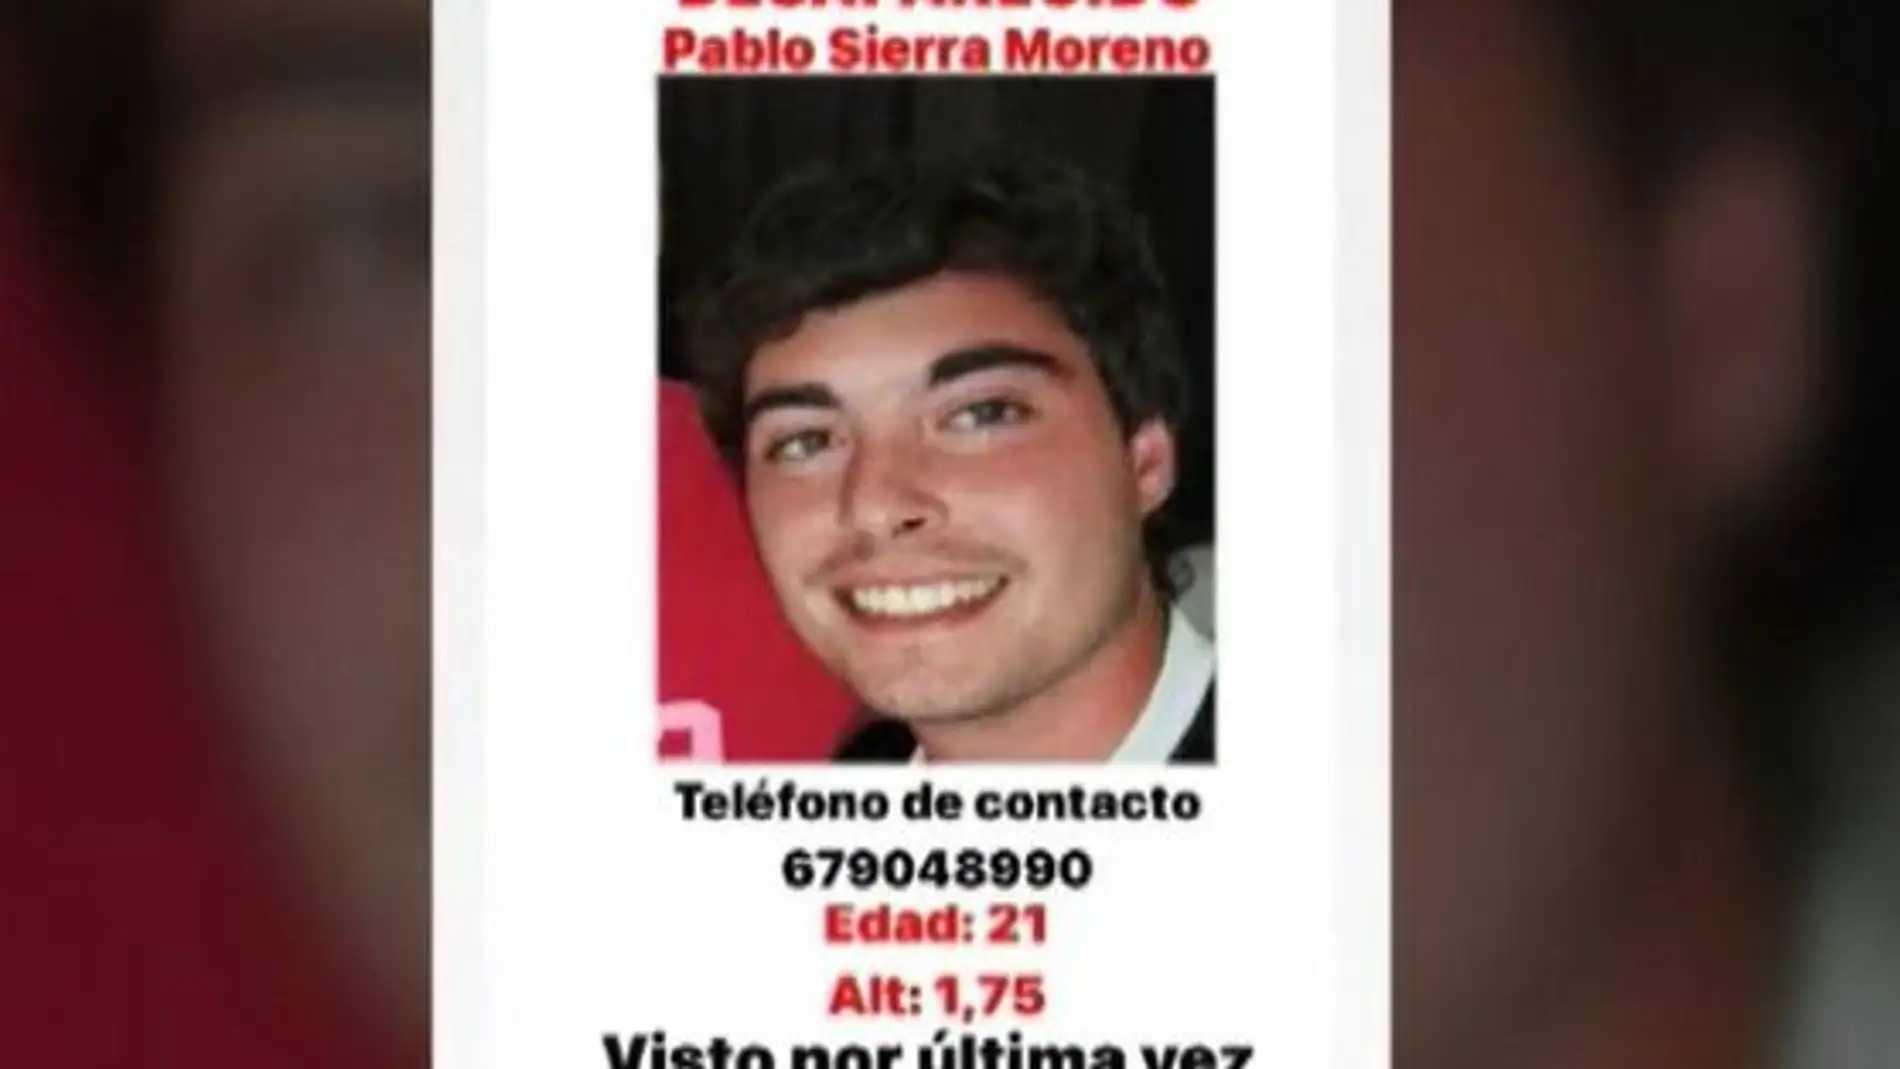 Pablo Sierra